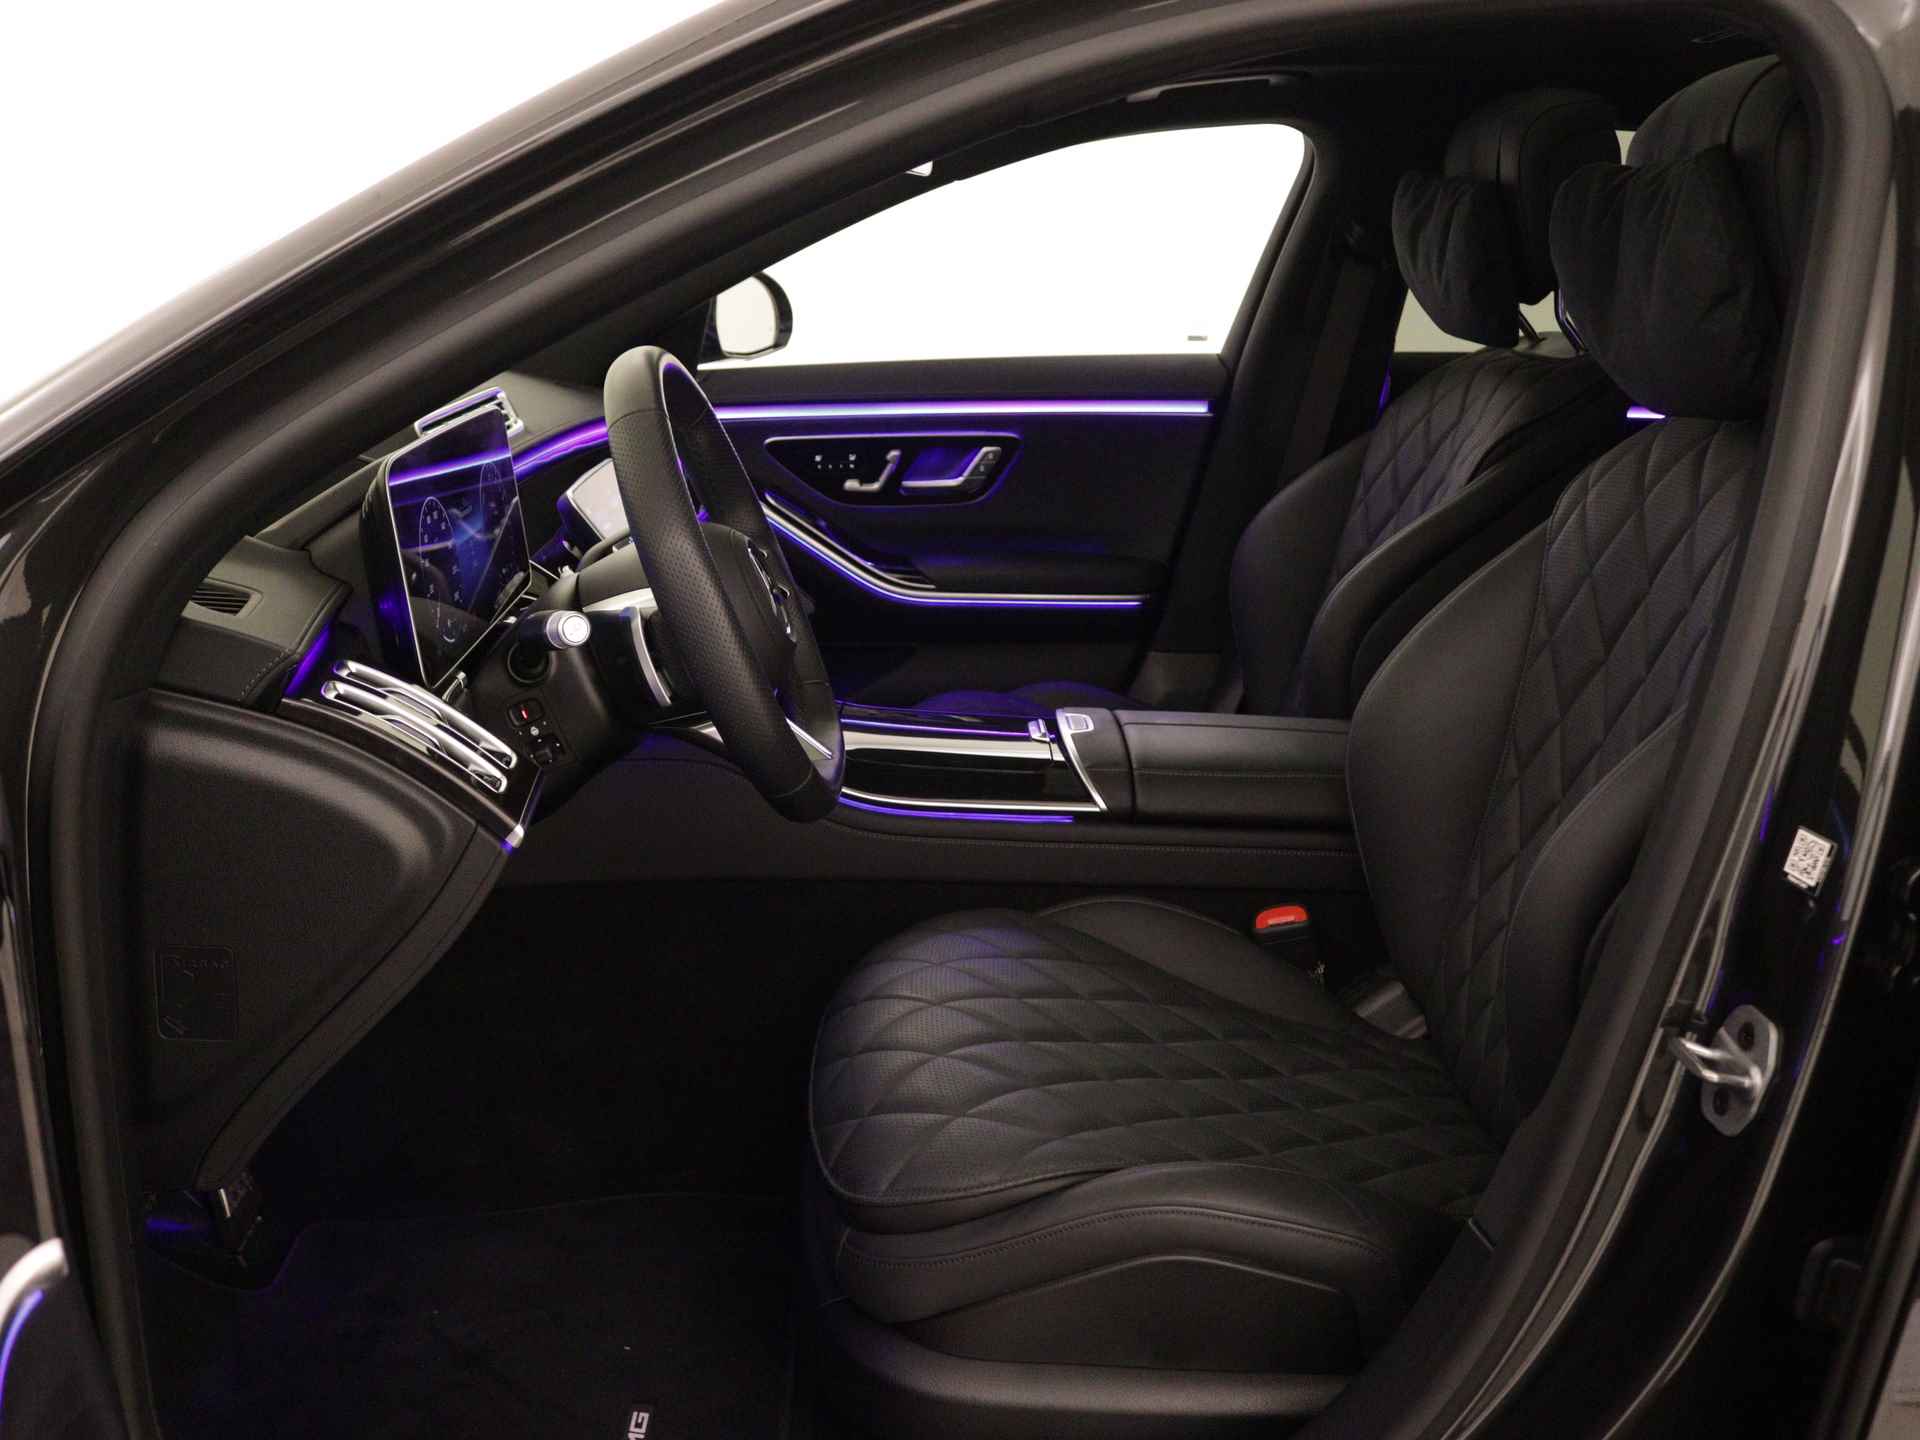 Mercedes-Benz S-Klasse 450 e Lang AMG Line Multi spaaks lichtmetalen velgen| Premium plus pakket | Night Pakket | Achteras meesturend 4,5 graad | Alarm klasse 5 | inclusief 24 maanden MB Certified garantie voor europa - 16/37